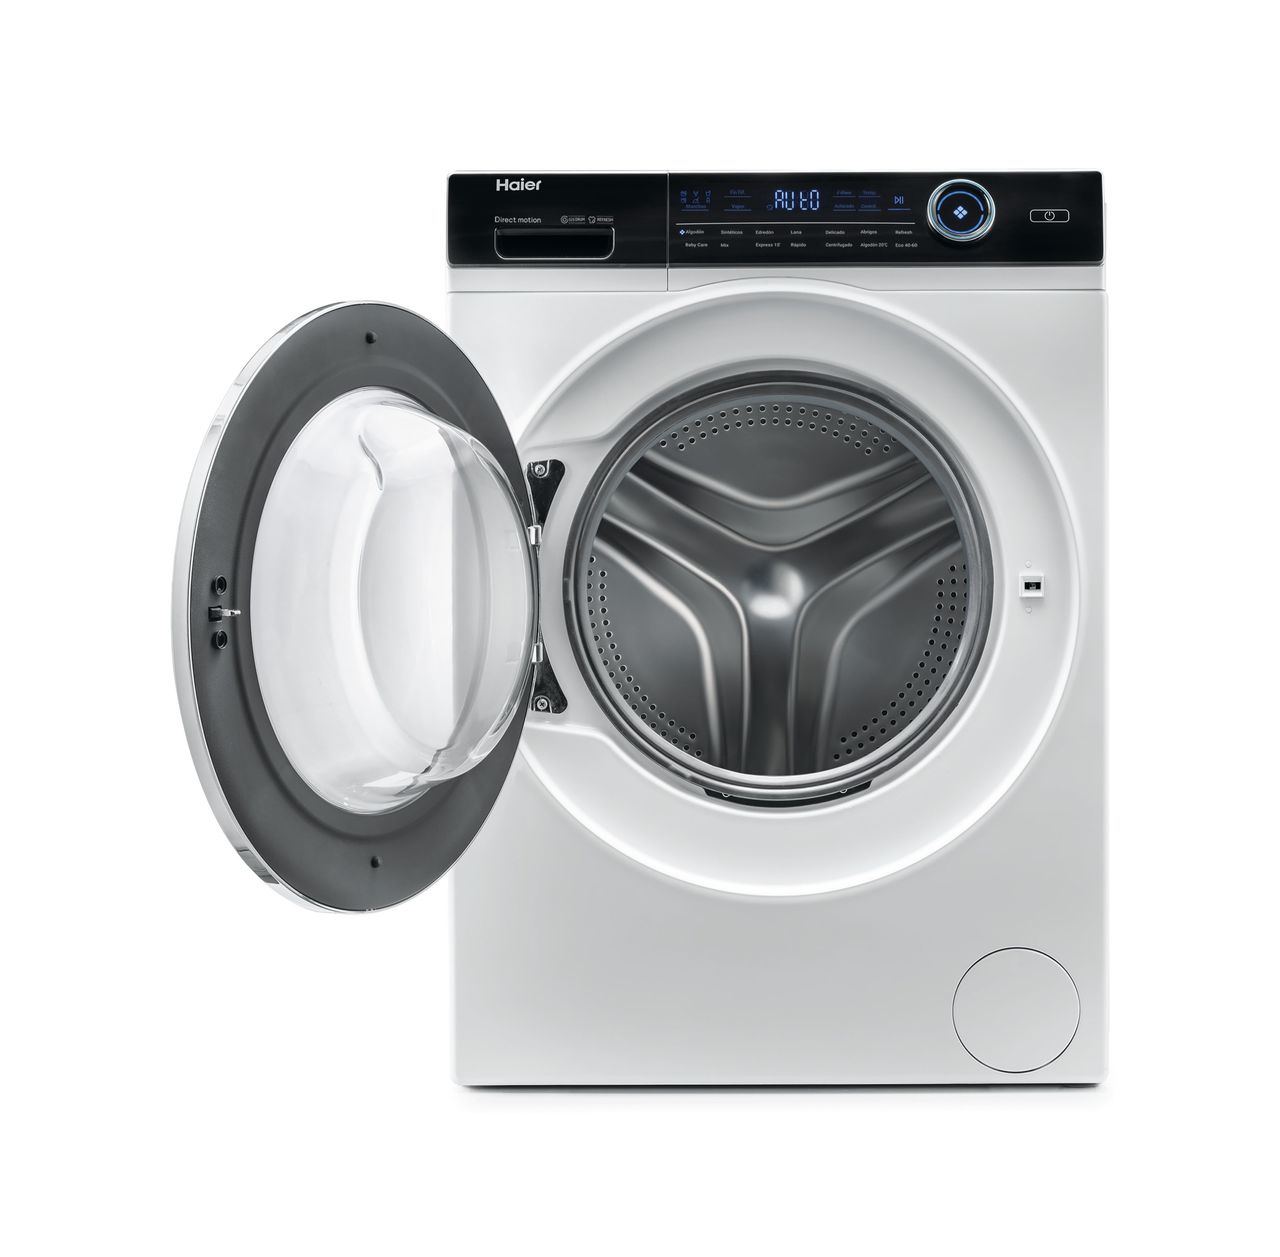 Haier presenta una nueva gama de lavadoras premium